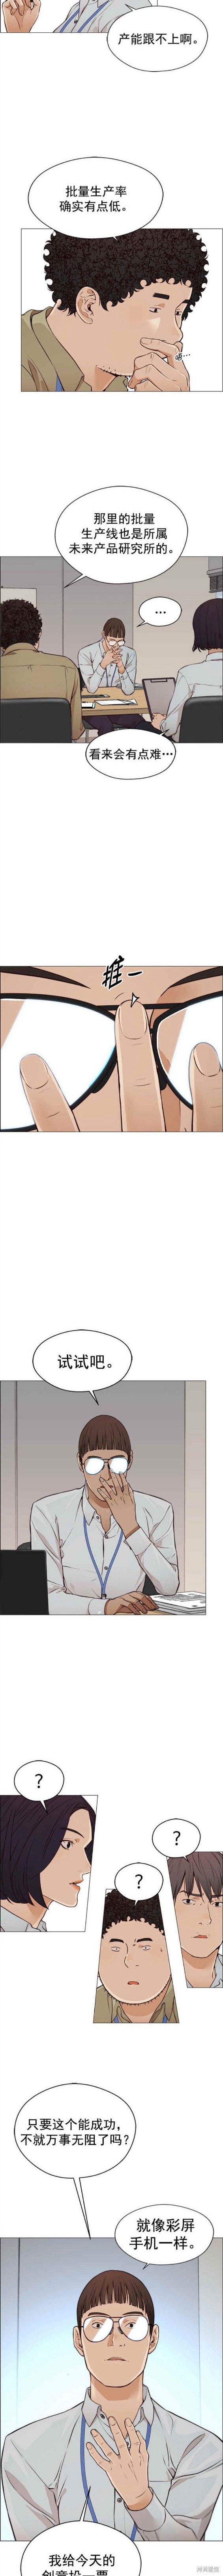 男子汉漫画,第126话10图